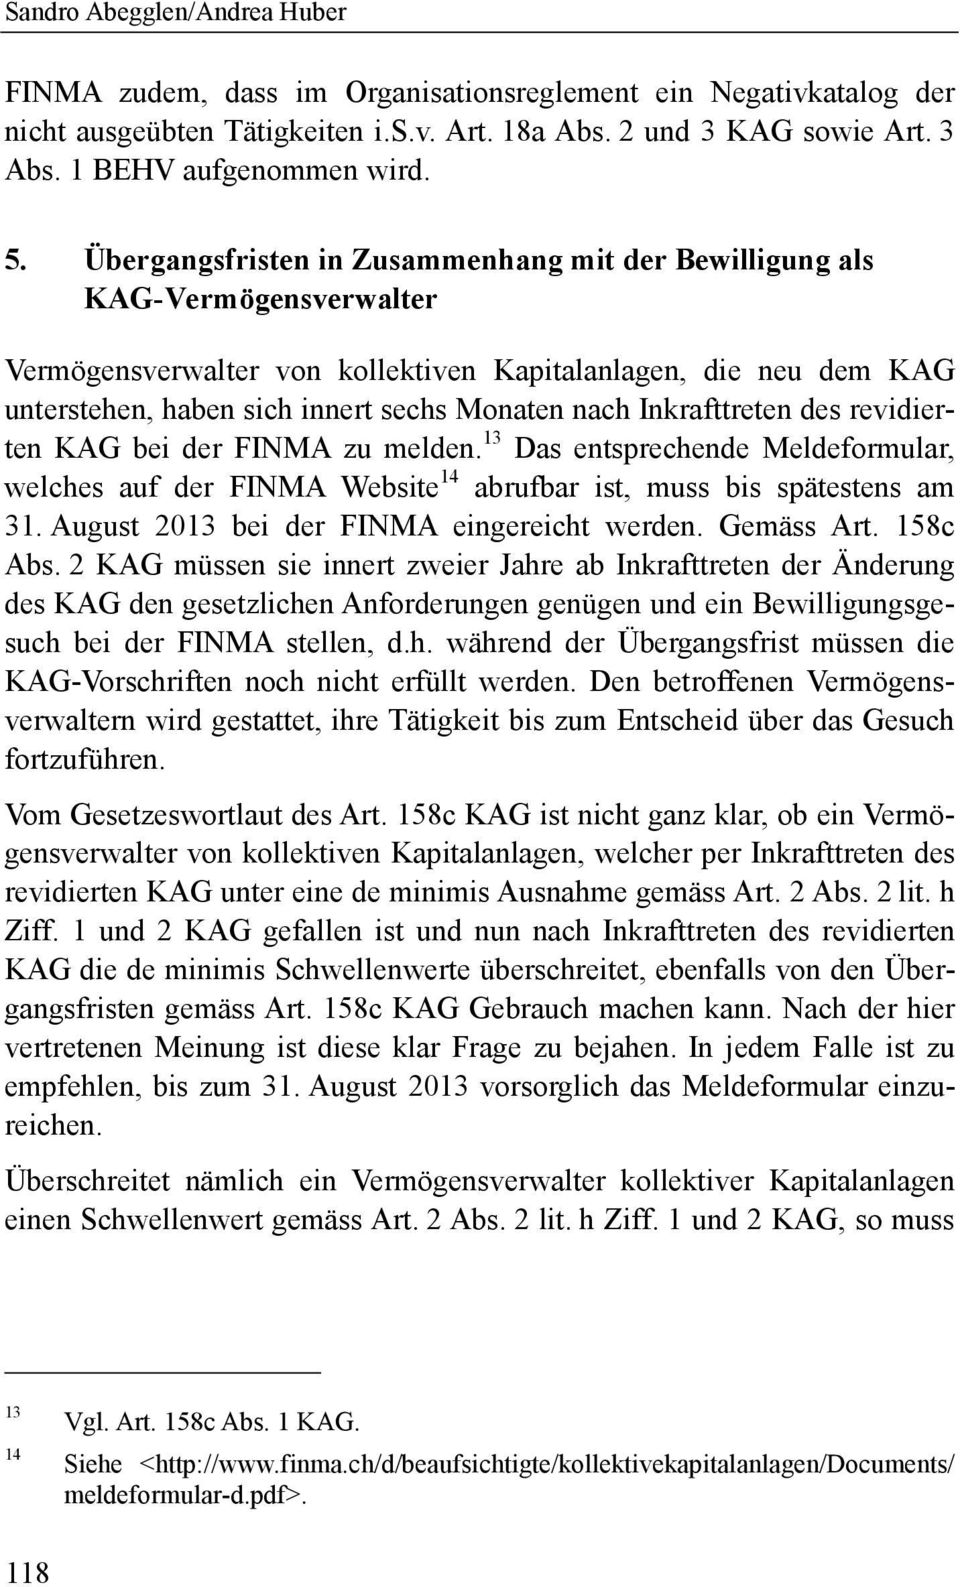 Inkrafttreten des revidierten KAG bei der FINMA zu melden. 13 Das entsprechende Meldeformular, welches auf der FINMA Website 14 abrufbar ist, muss bis spätestens am 31.